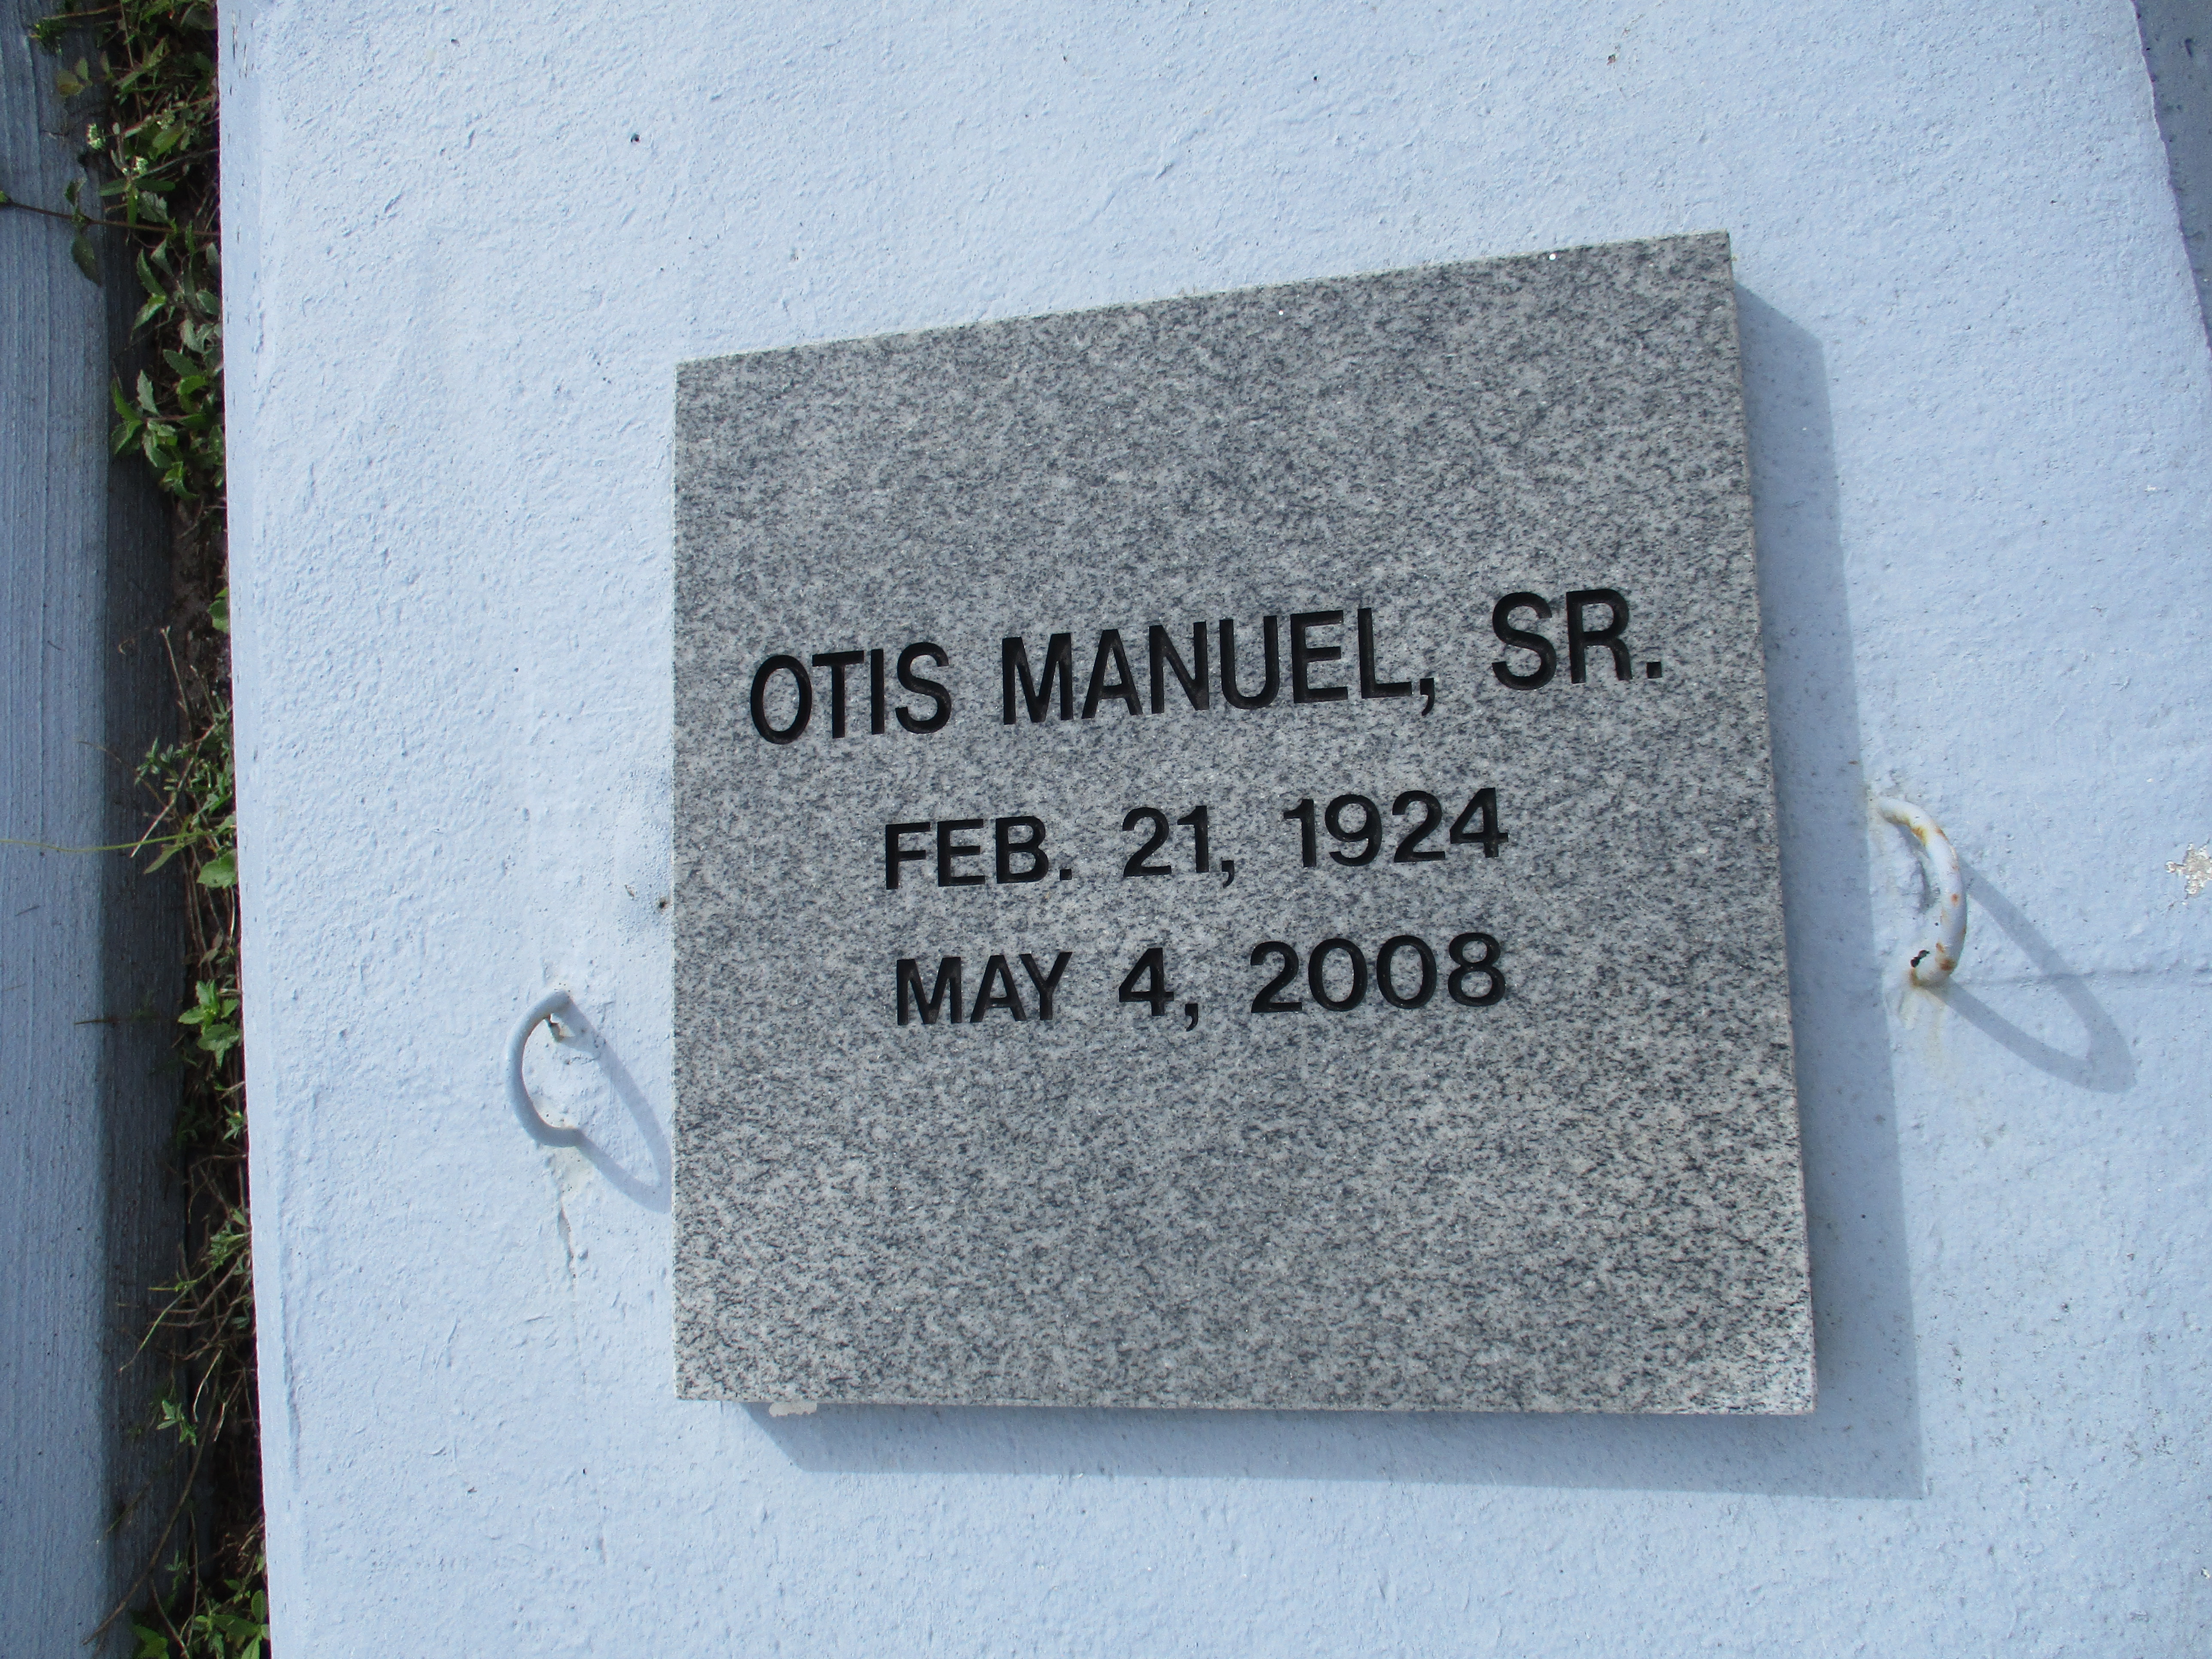 Otis Manuel, Sr